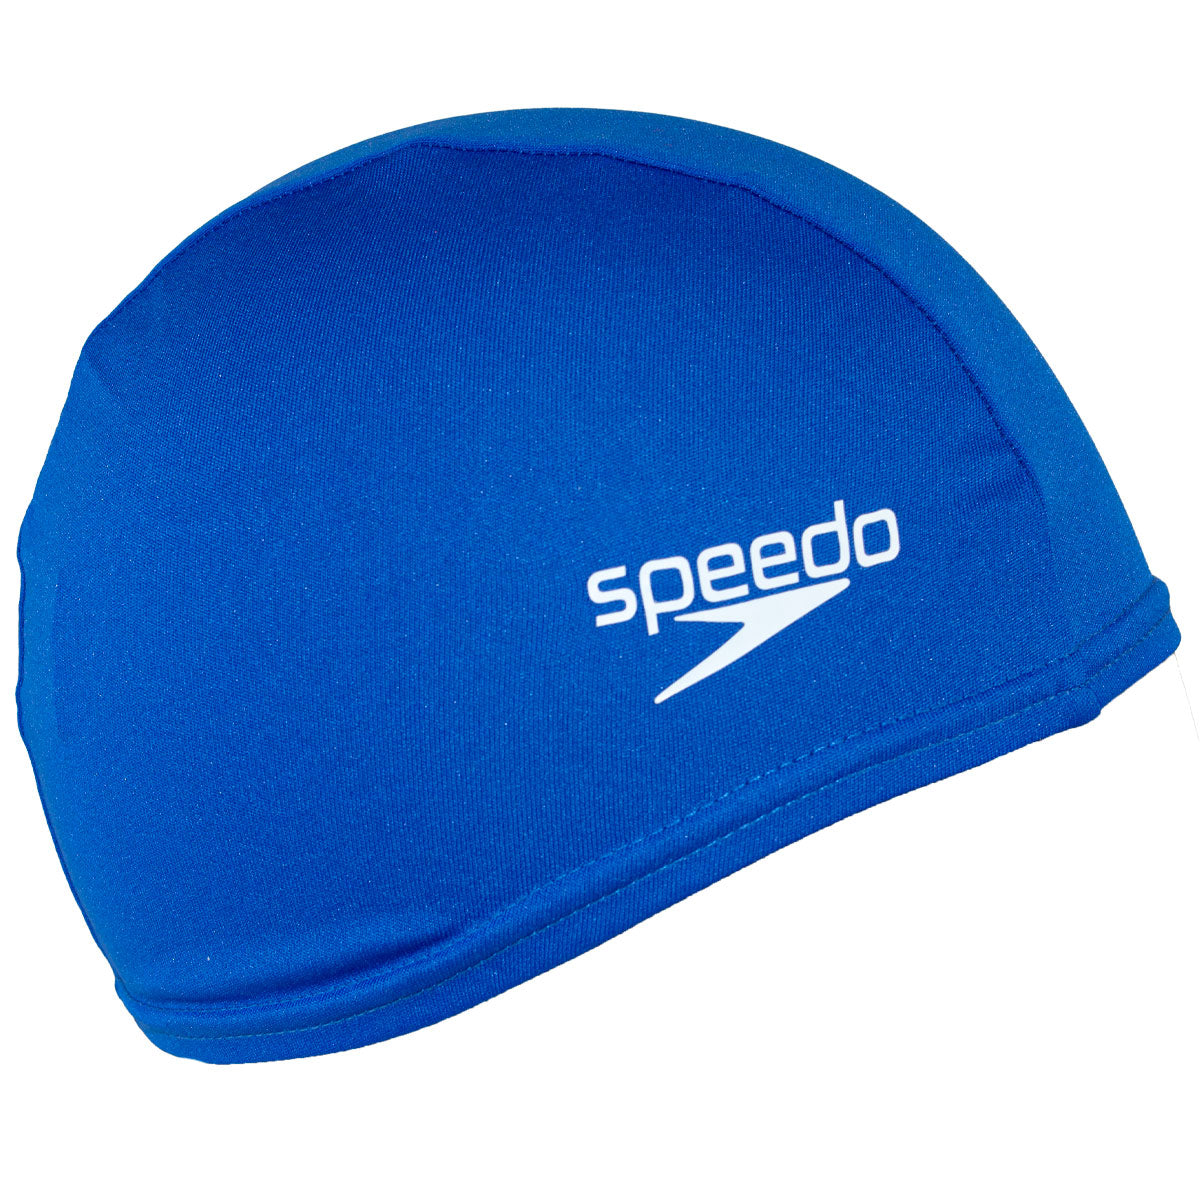 Speedo Polyester Swim Cap - Youth